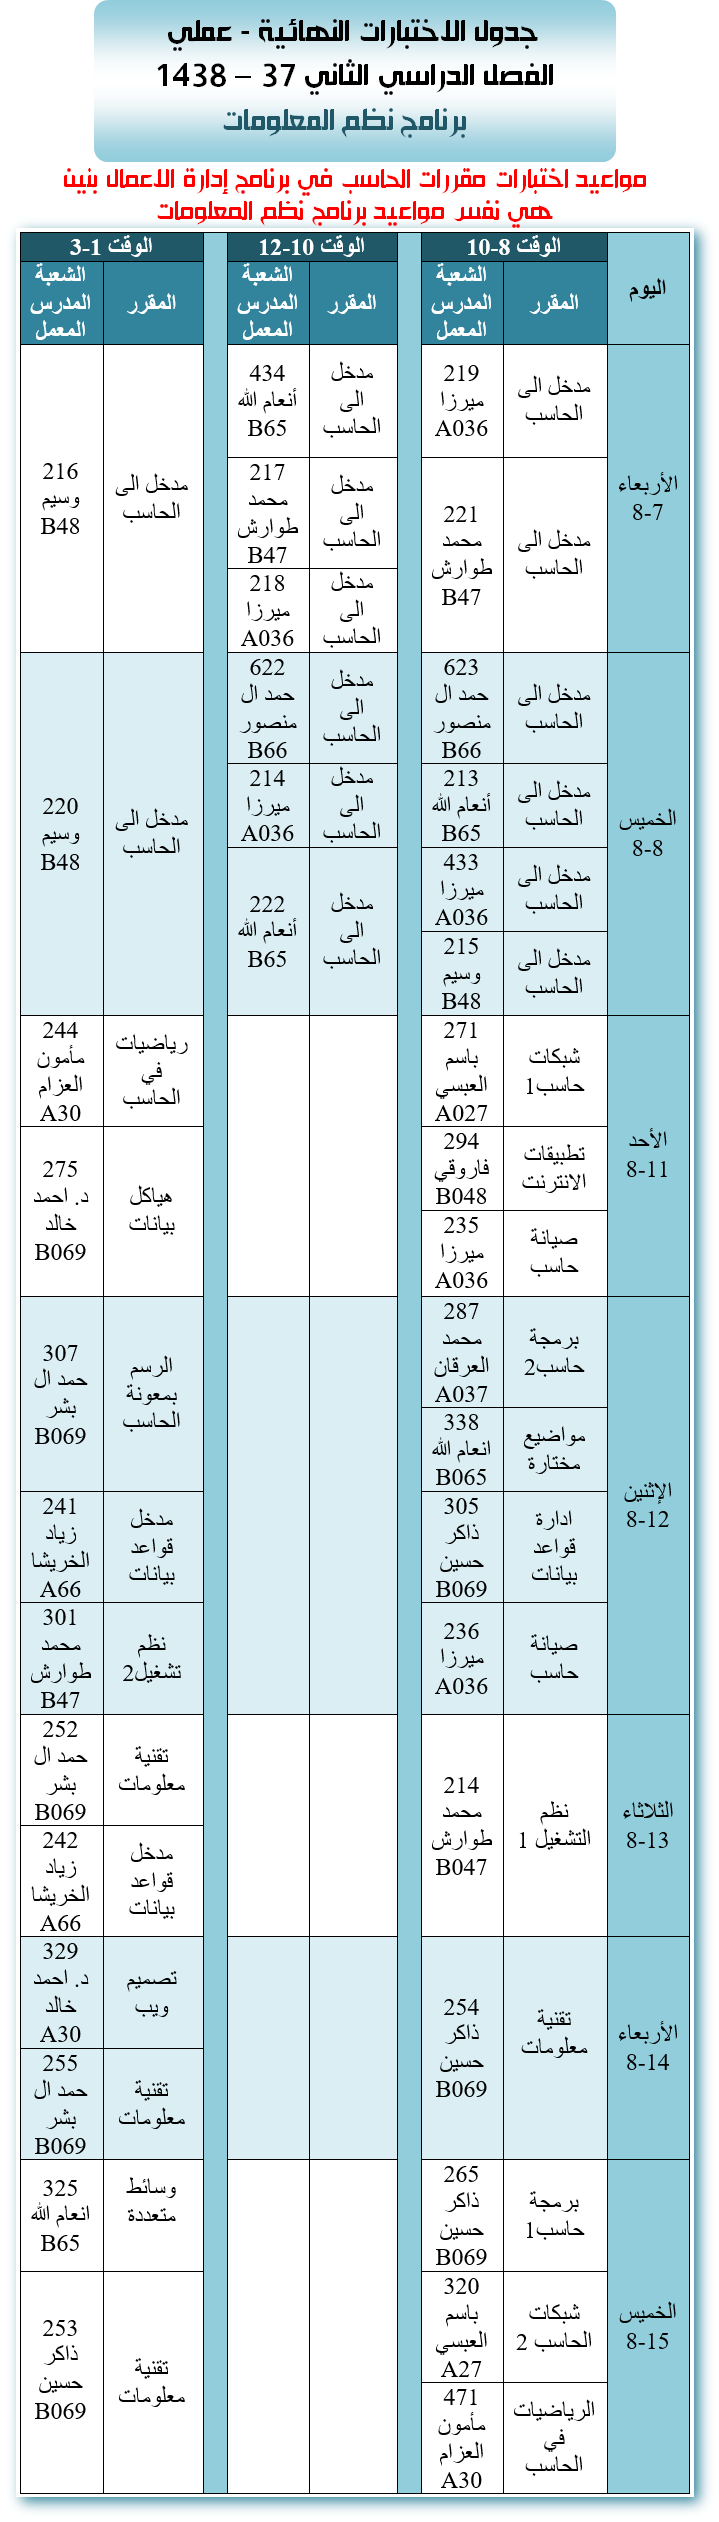 جدول الاختبارات العملية النهائية - نظم المعلومات - الفصل الدراسي الثاني 37 - 1438هـ